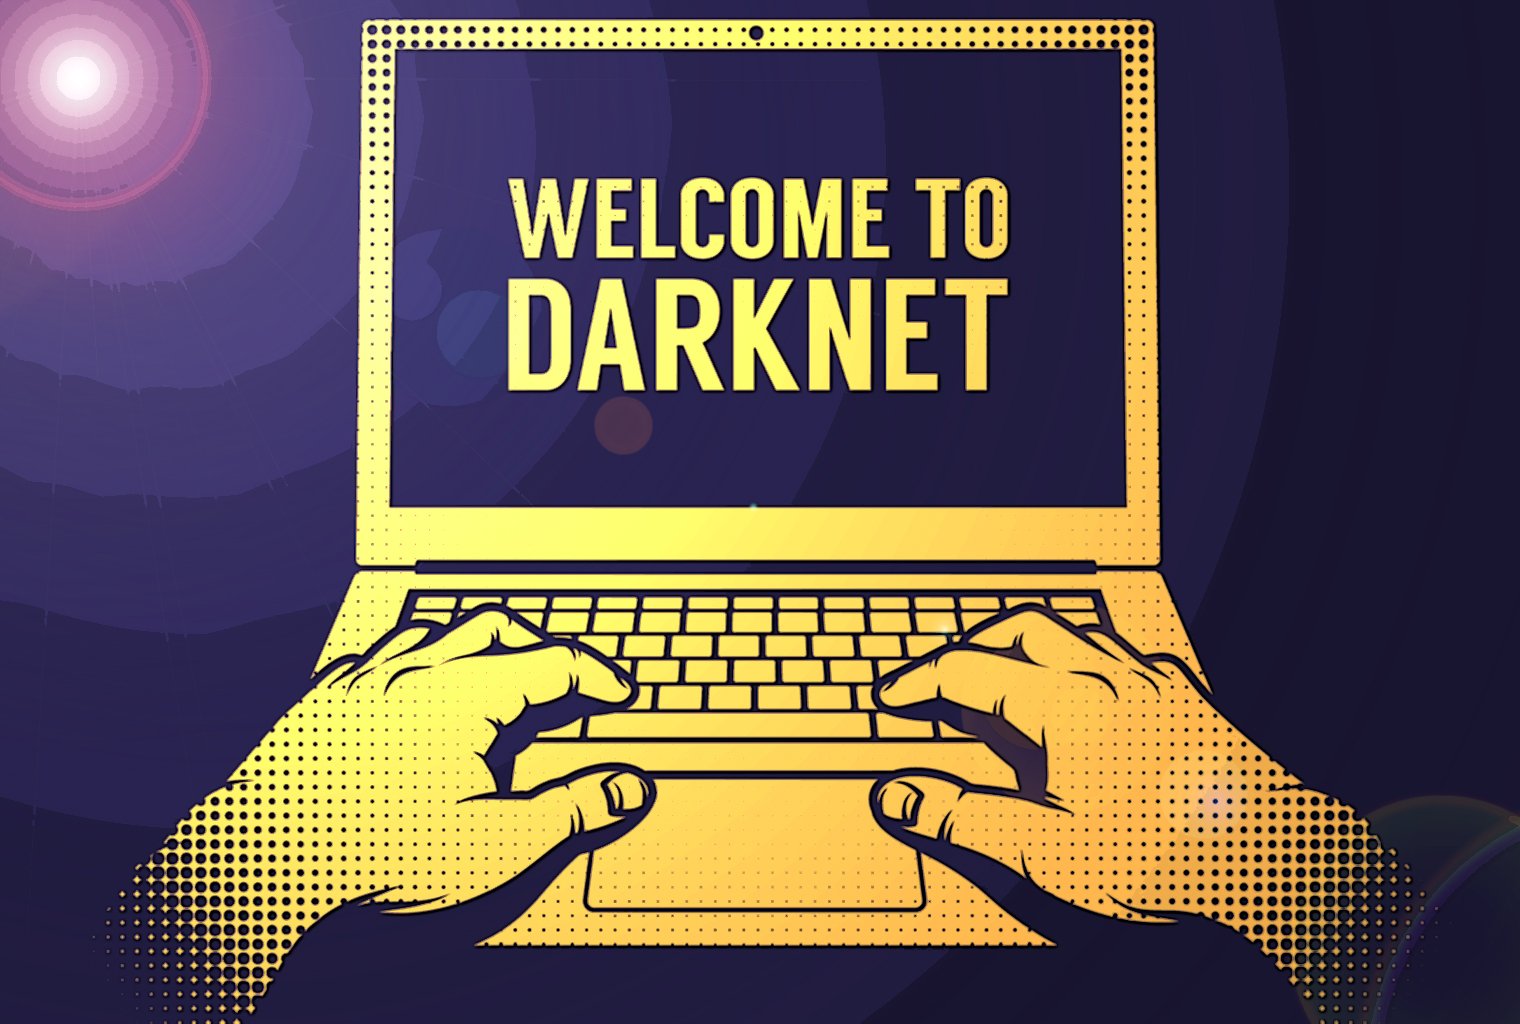 Darknet market news